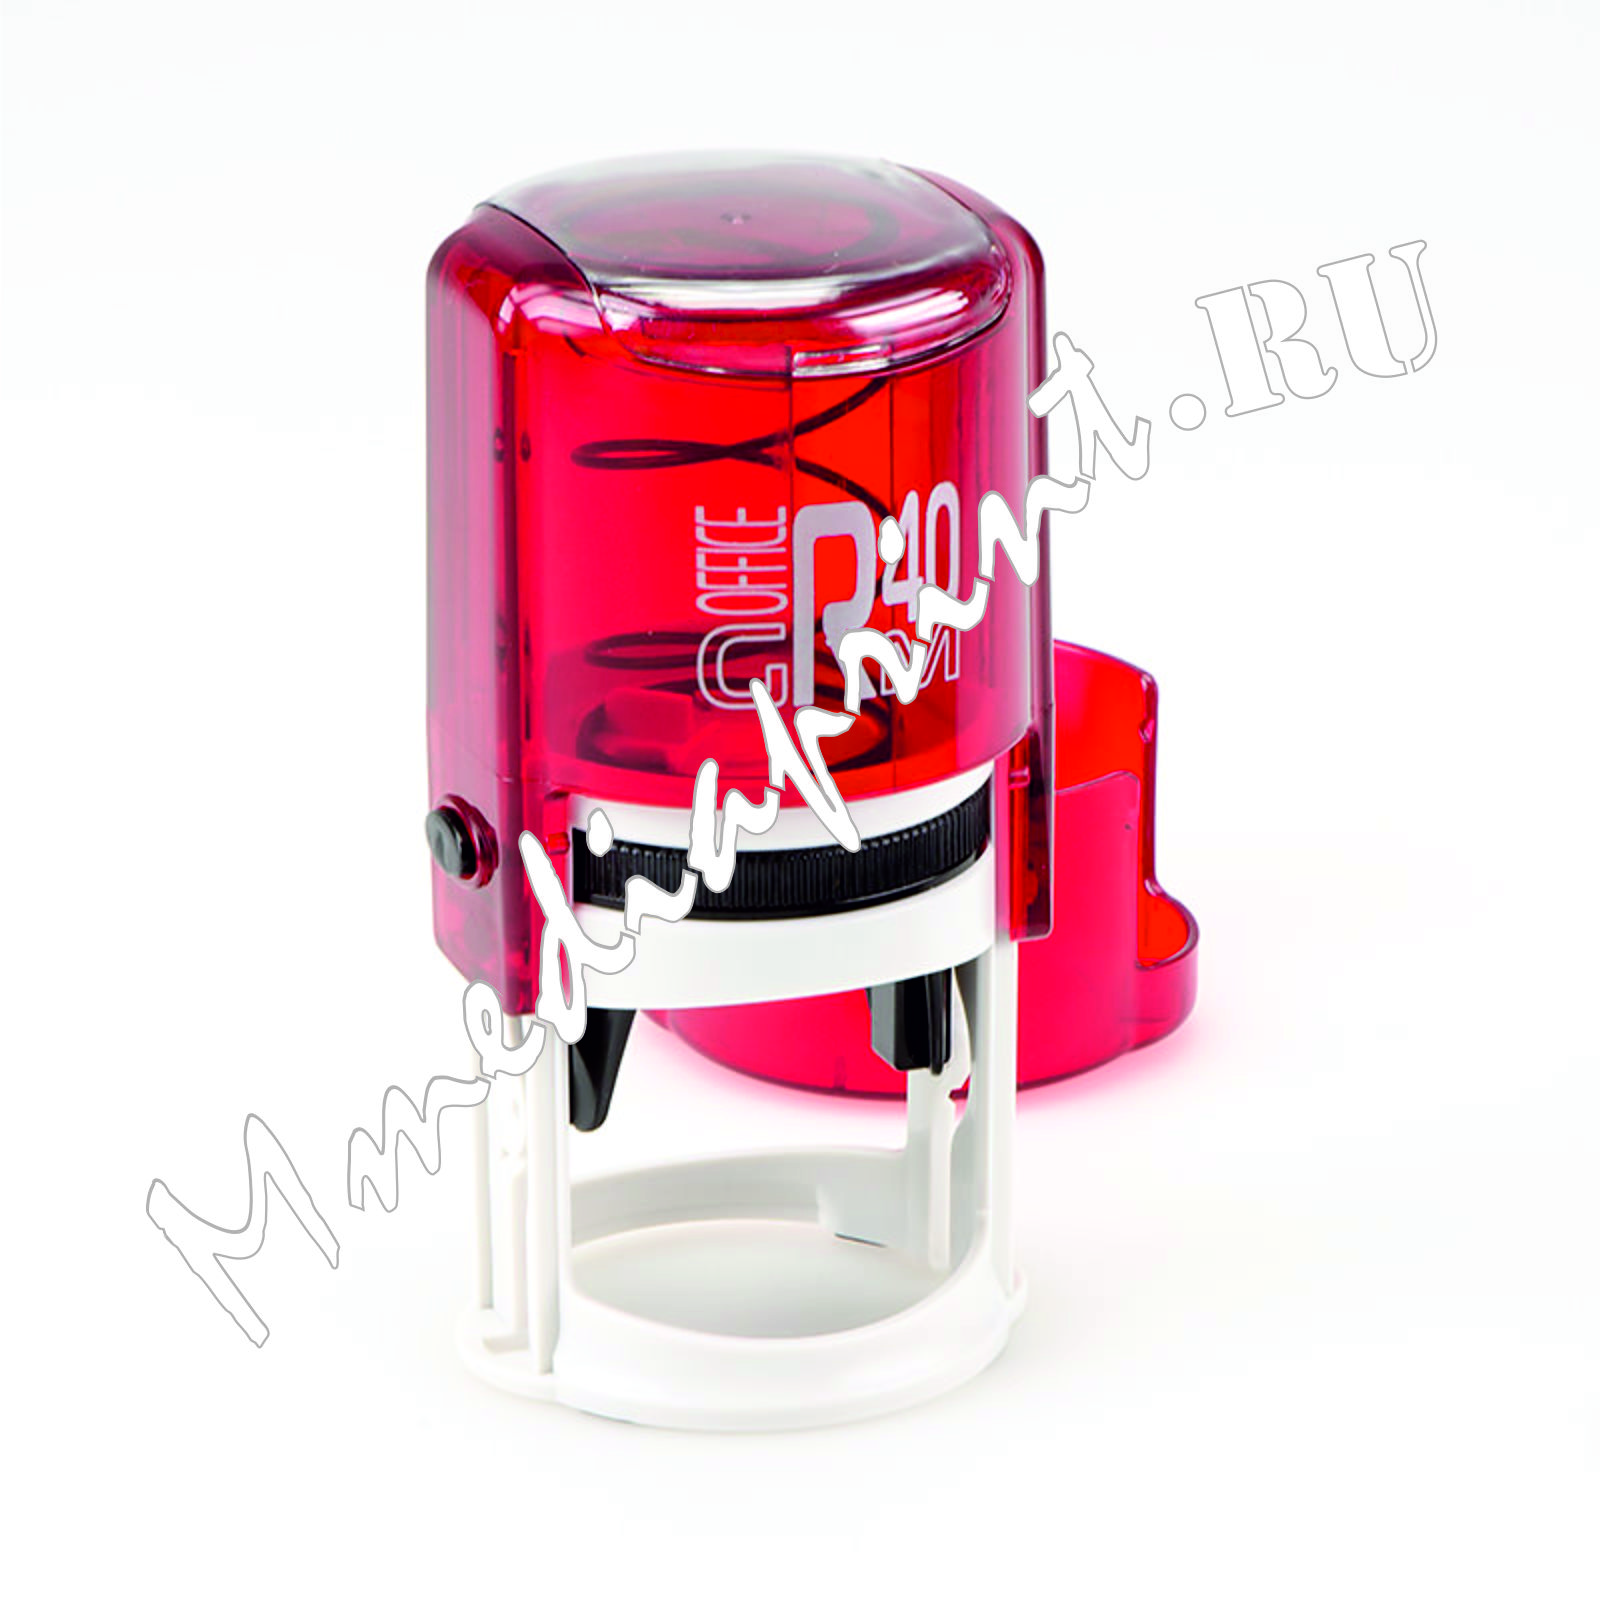 ММедиапринт-автоматическая оснастка для печати Рубин (красная) диаметр 40 мм с защитным боксом серии Offis